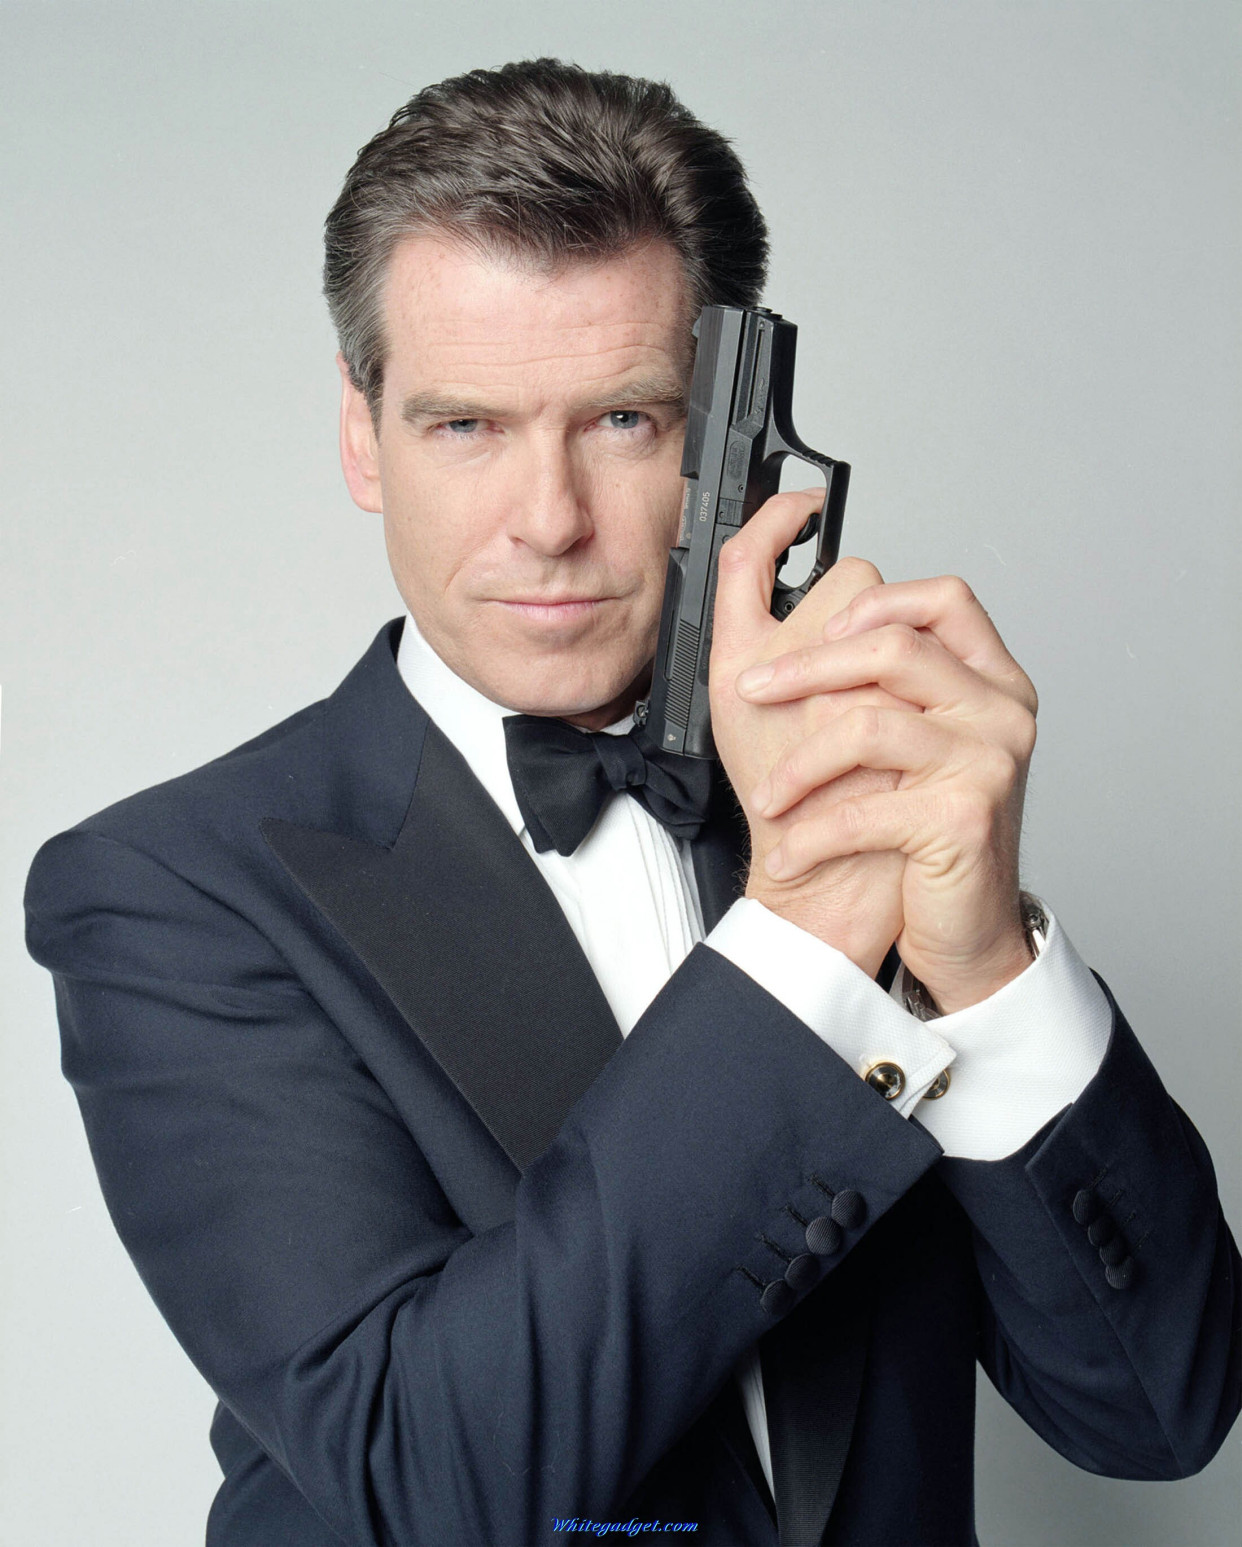 而我最先接触到的007则是皮尔斯布鲁斯南饰演的007,那是一个帅气优雅